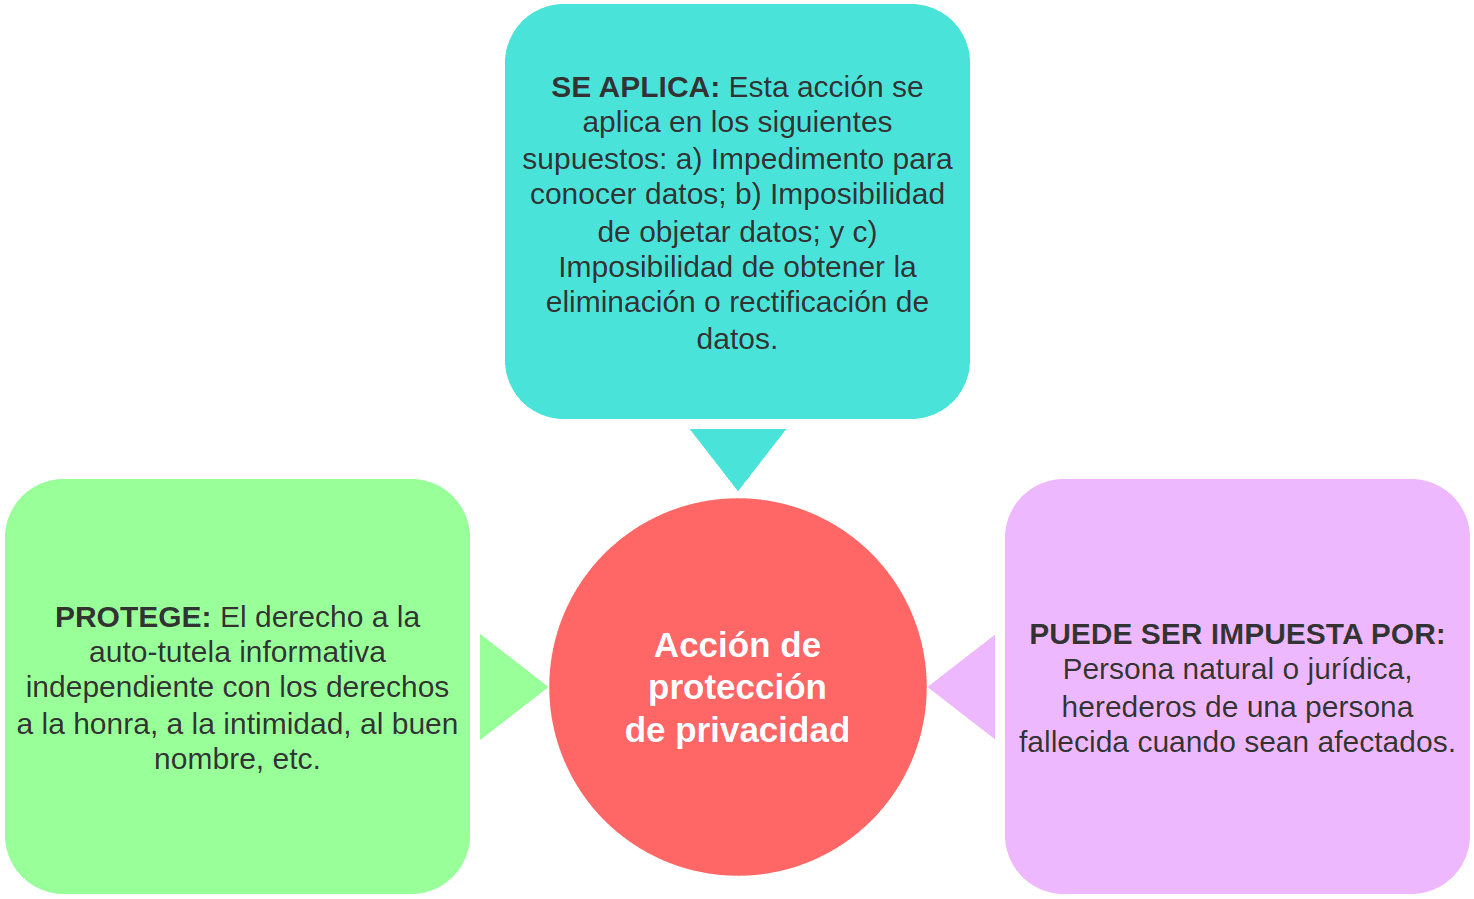 RASGOS CENTRALES DE LA ACCIÓN DE PROTECCIÓN DE PRIVACIDAD